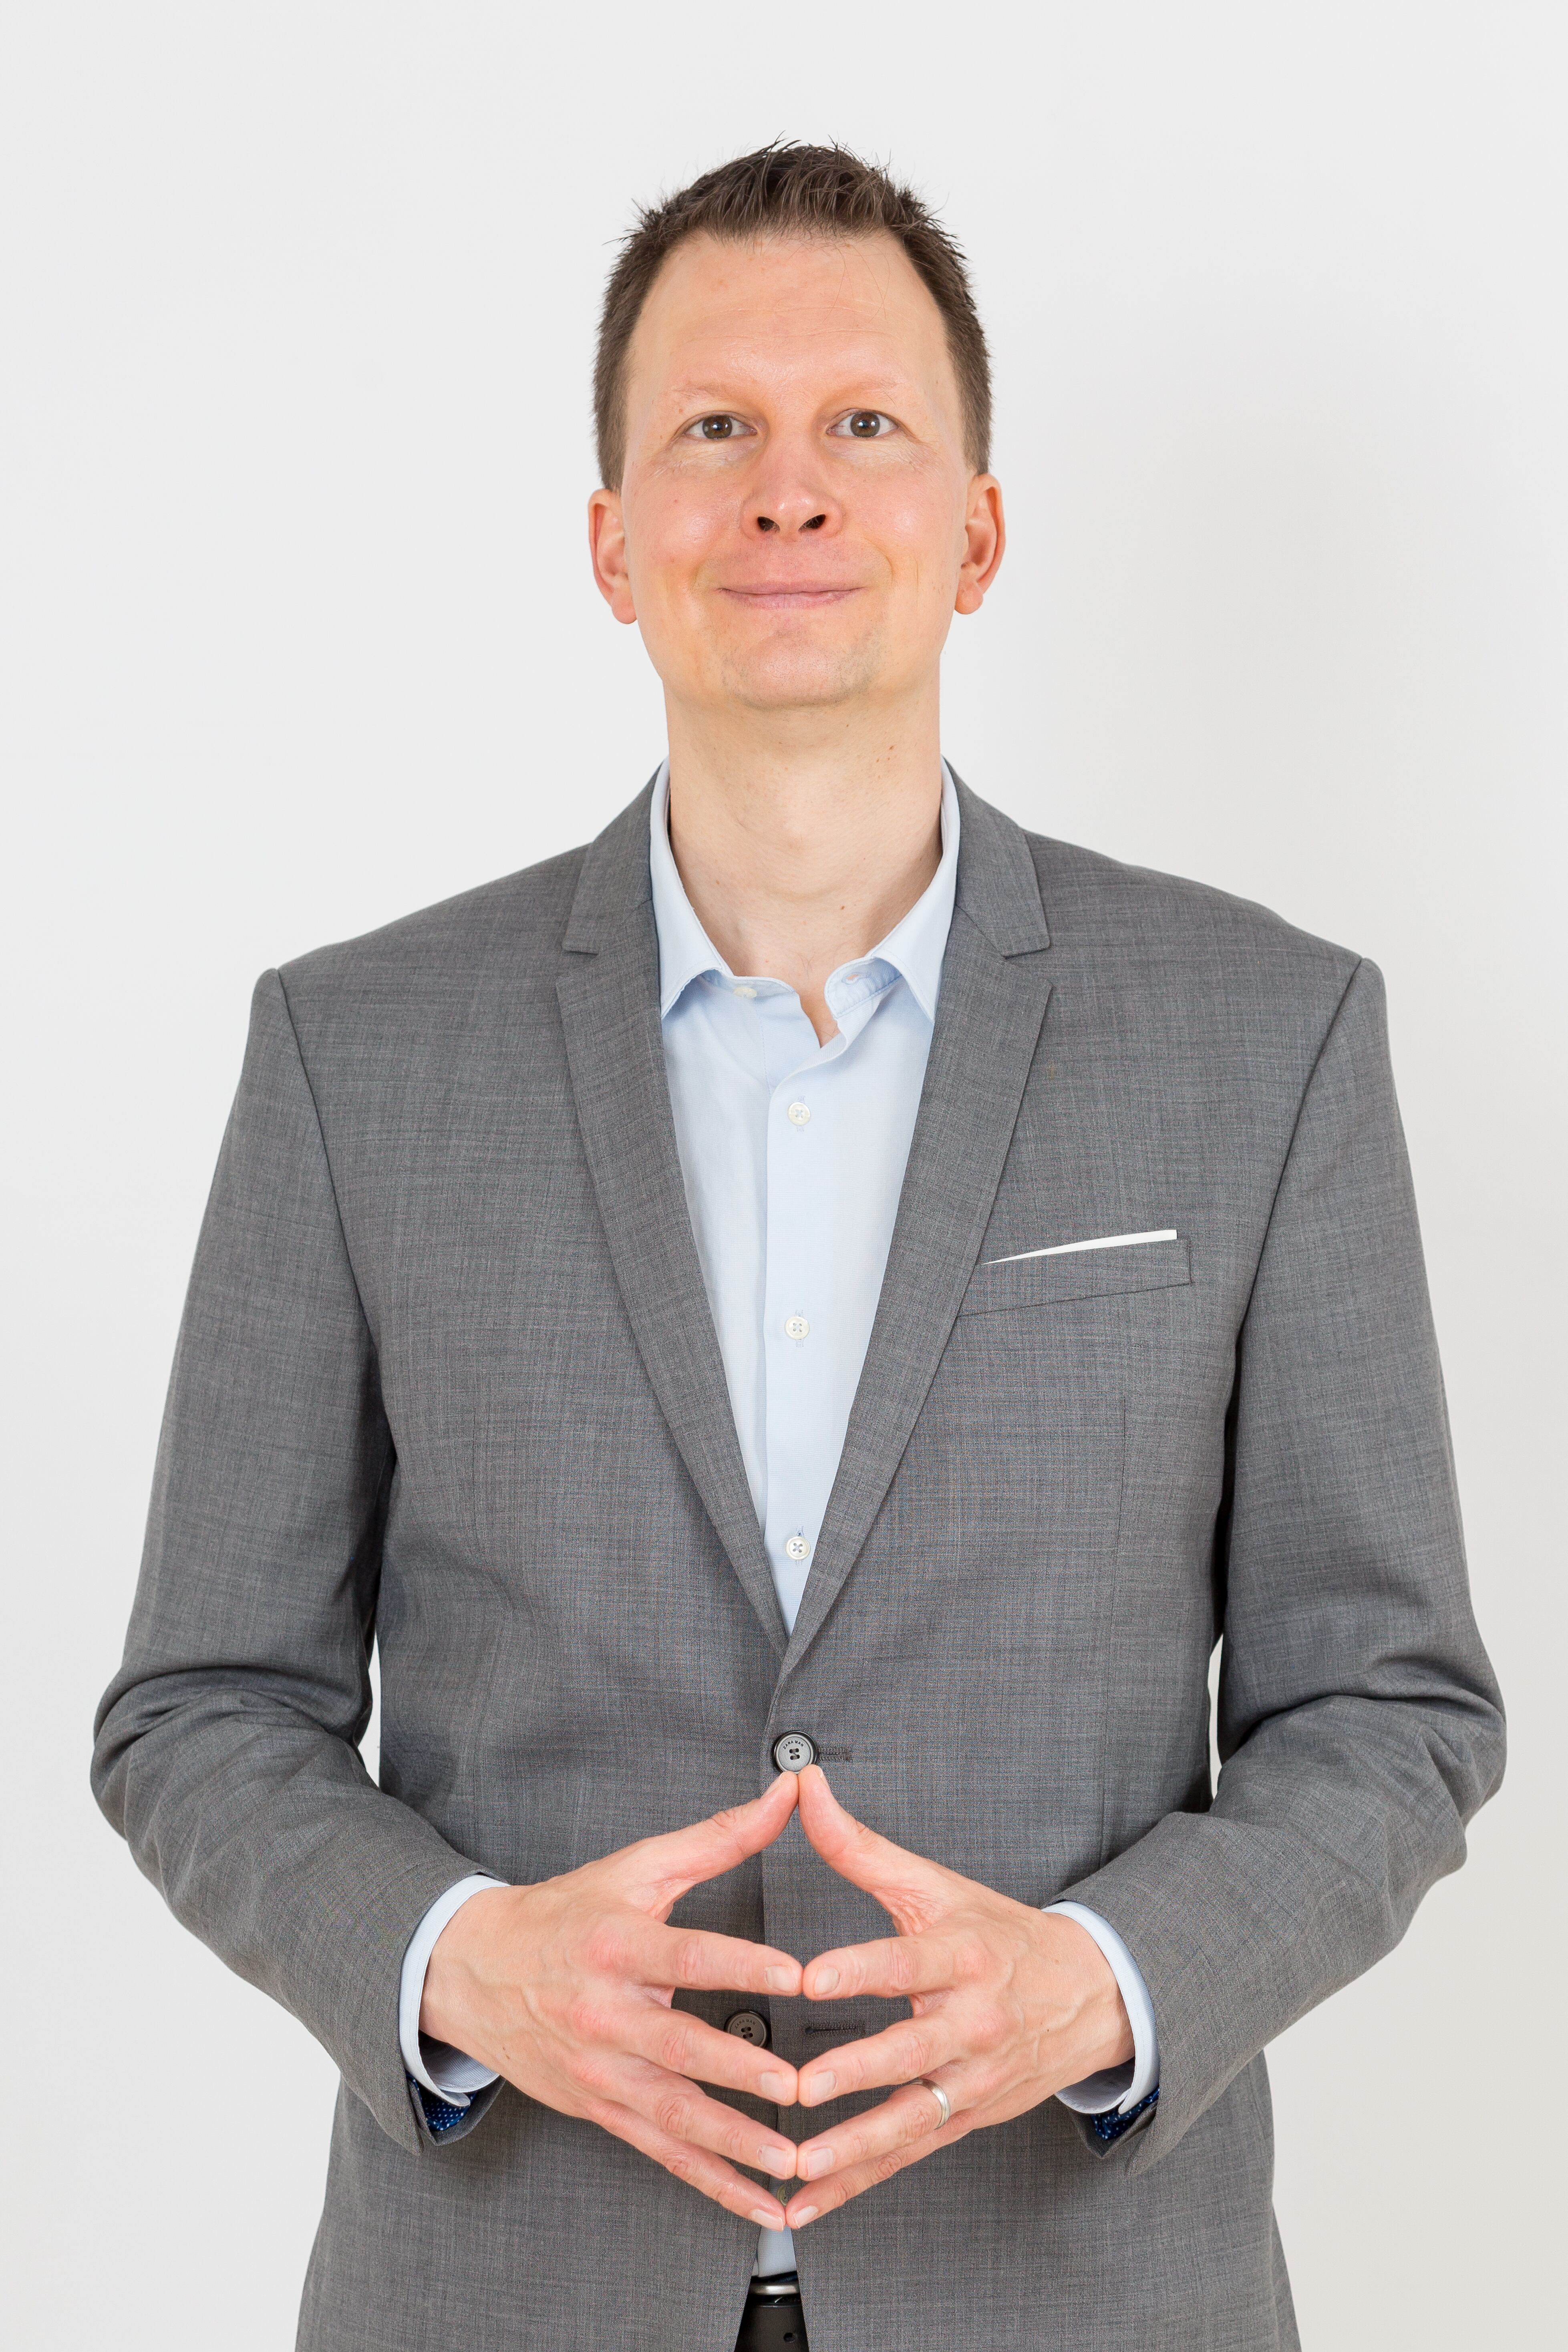 Lasse Rouhiainen (Espoo, Finlandia; de 42 años), escritor, consultor y experto en inteligencia artificial.